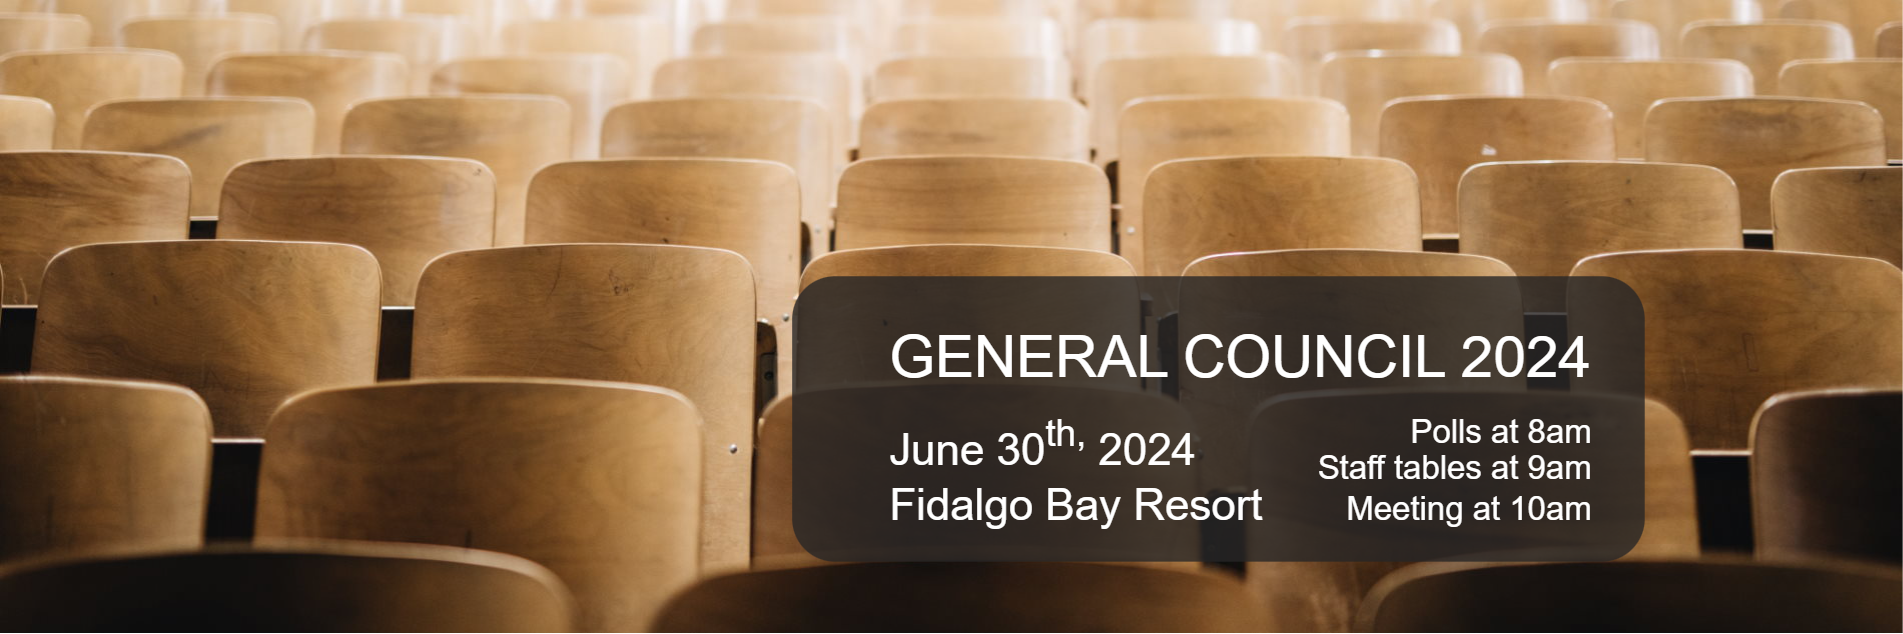 General Council - 6/30/2024 at Fidalgo Bay Resort - Polls at 8am, Staff tables at 9am, Meeting at 10am